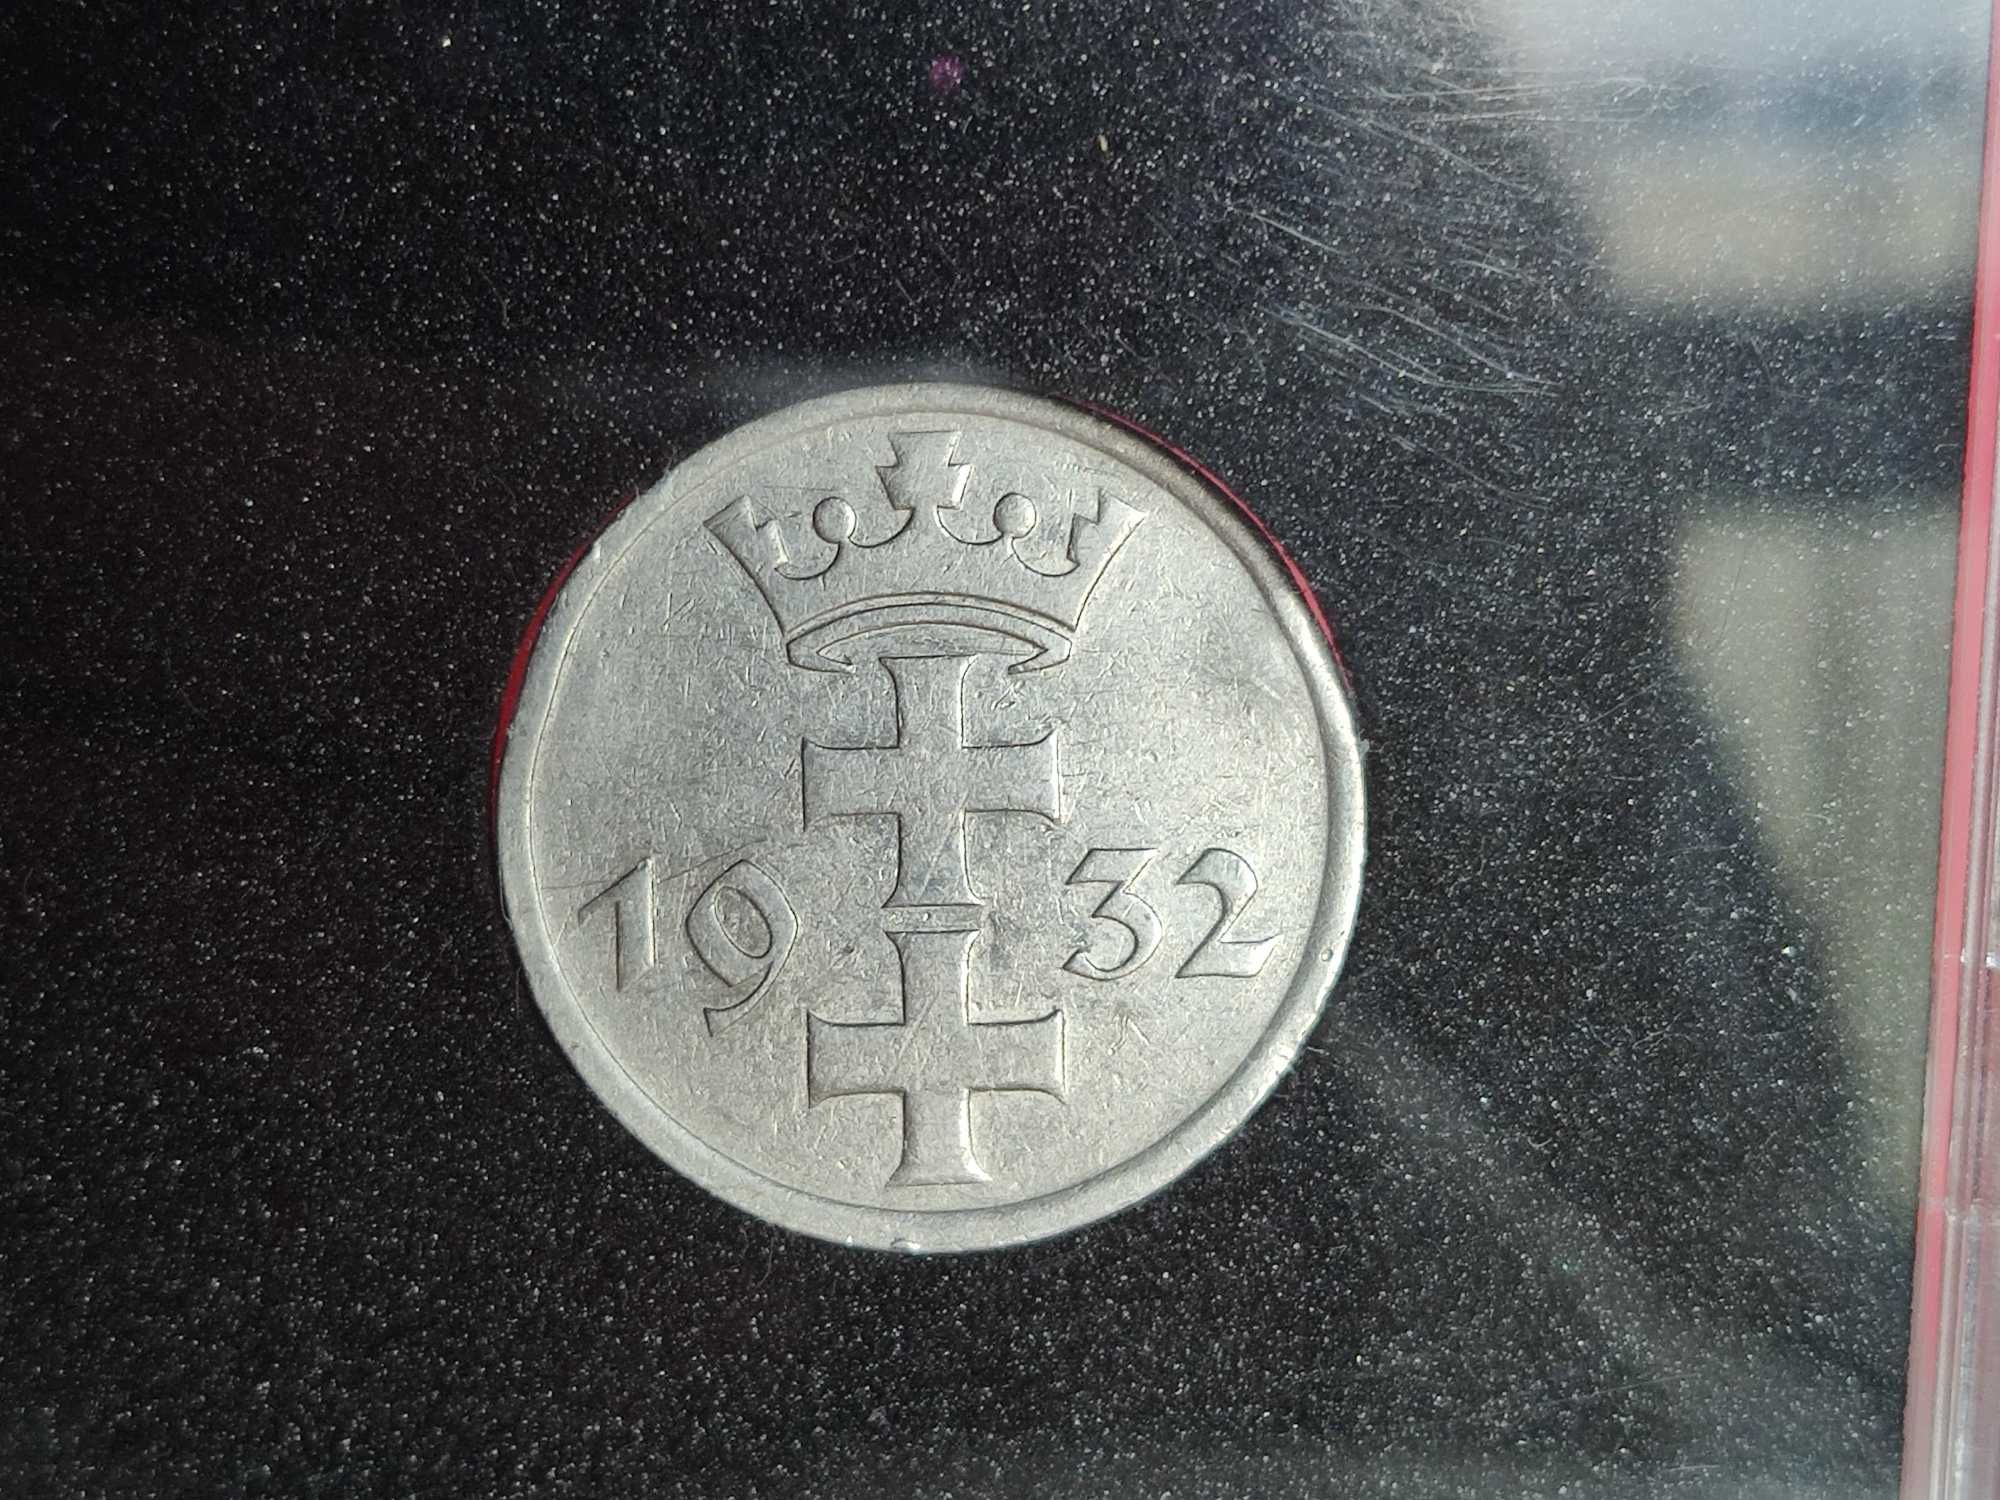 1 Gulden gdański 1932r. (nikiel) w slabie.